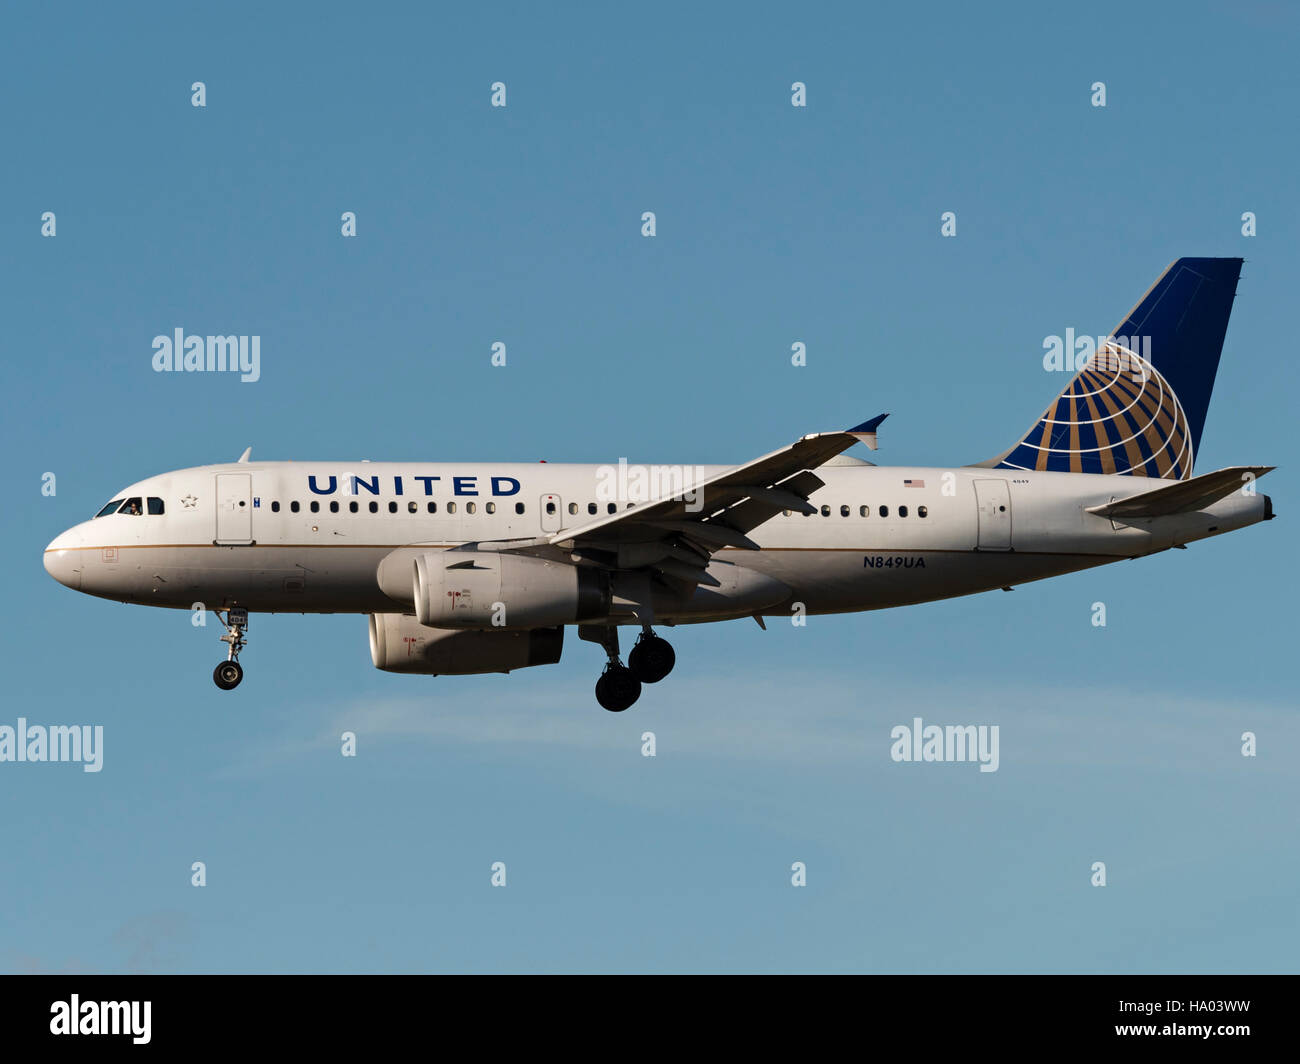 United Airlines avión jet airliner avión Airbus A319 airborne acercamiento final aterrizar avión avión de aerolínea Foto de stock